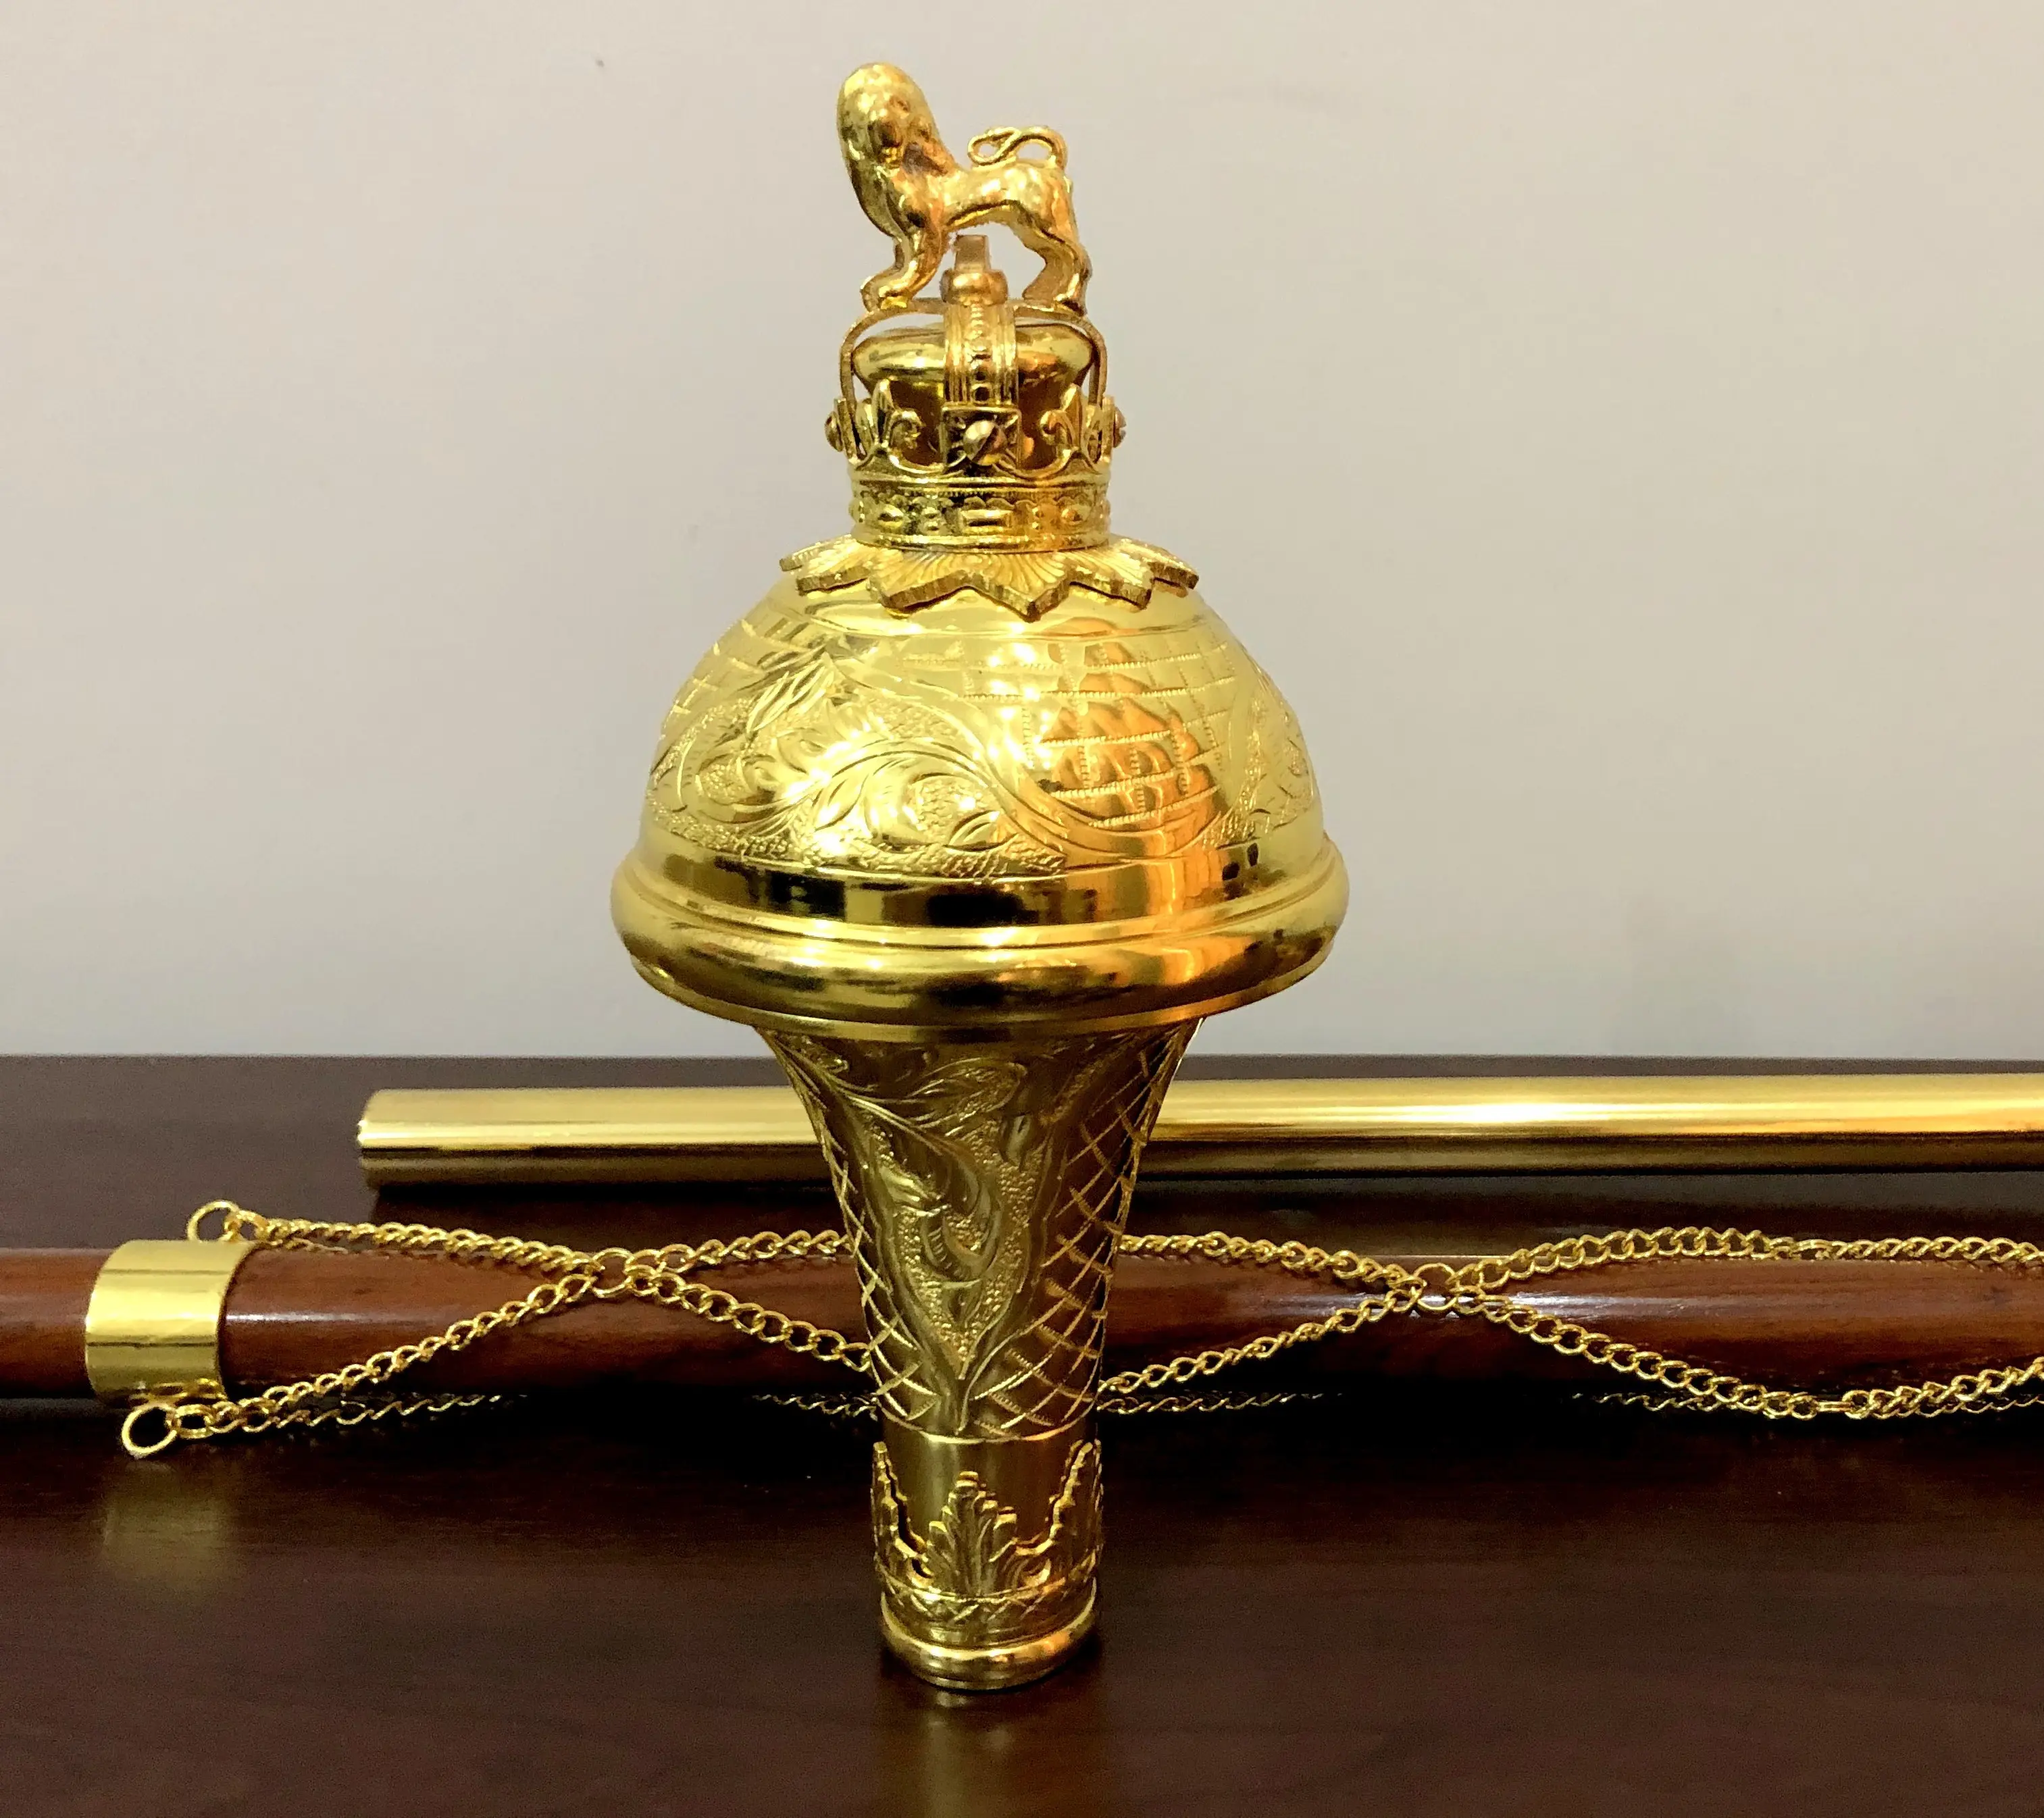 Dobby — bâton de mque pour cérémonie de tambour, sac de transport souple, tête de Lion & couronne gravé à la main